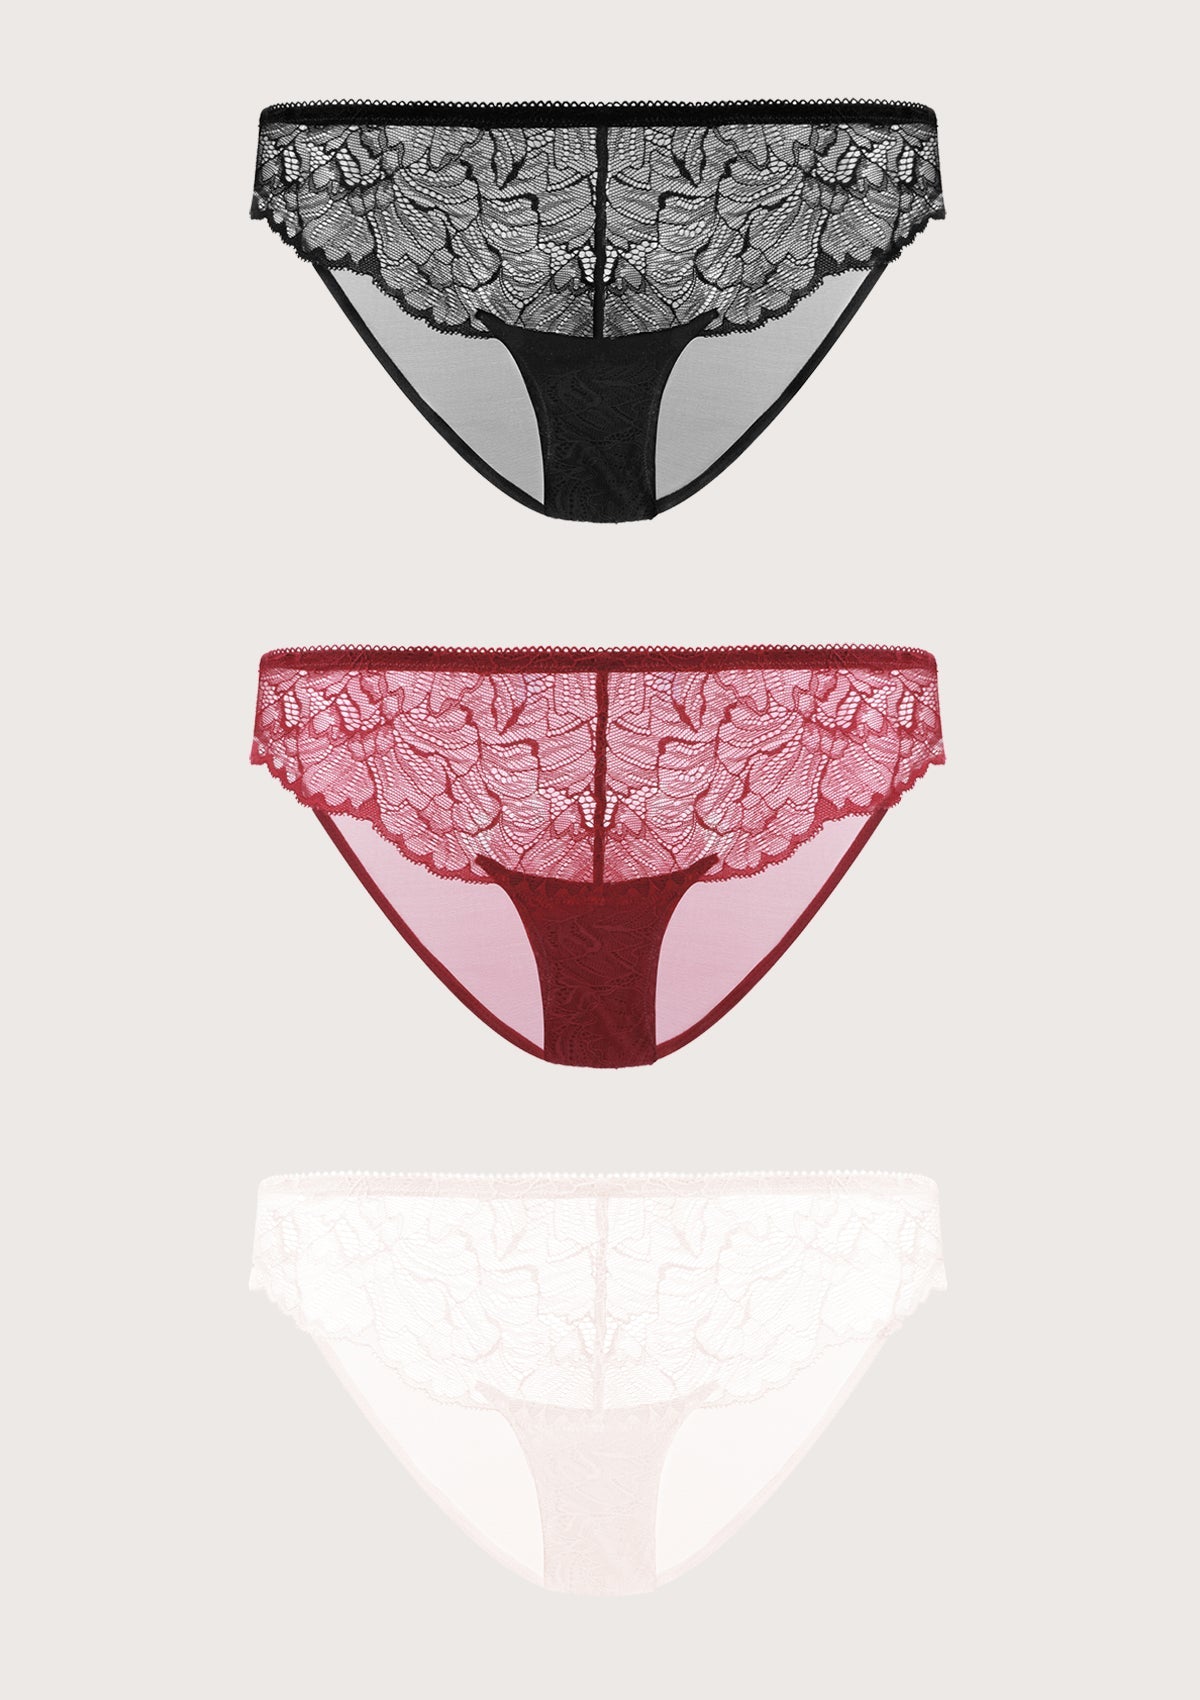 HSIA Blossom Lace Mesh Bikini Underwears 3 Pack - XXXL / Black+Dark Pink+Purple